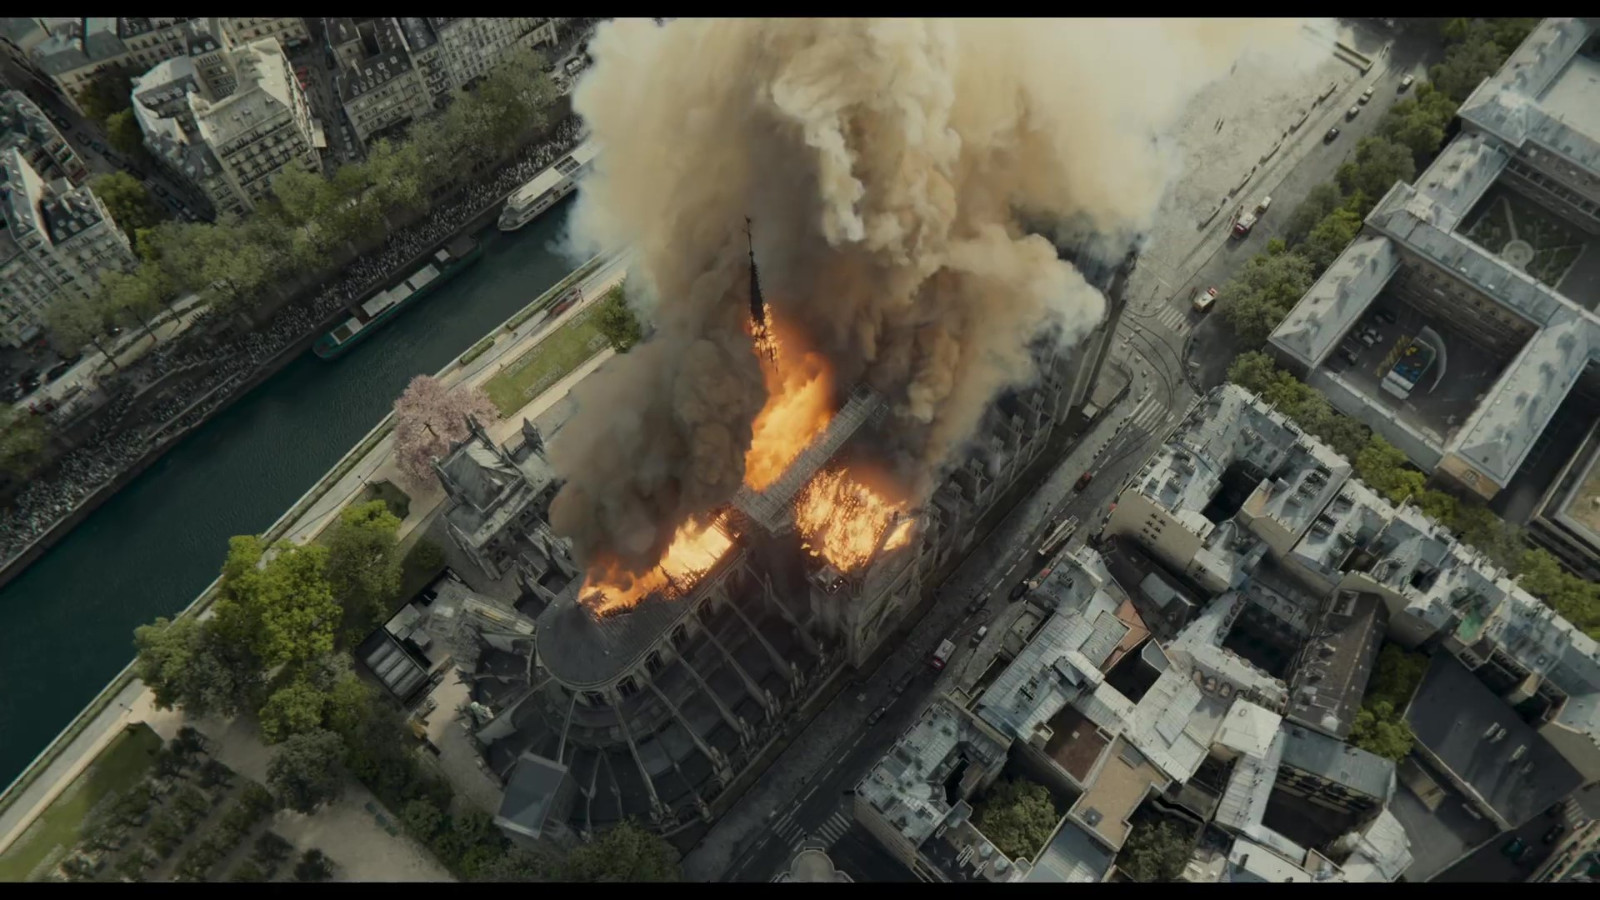 育碧新VR游戏将于3月16日上线 基于纪录片《燃烧的巴黎圣母院》